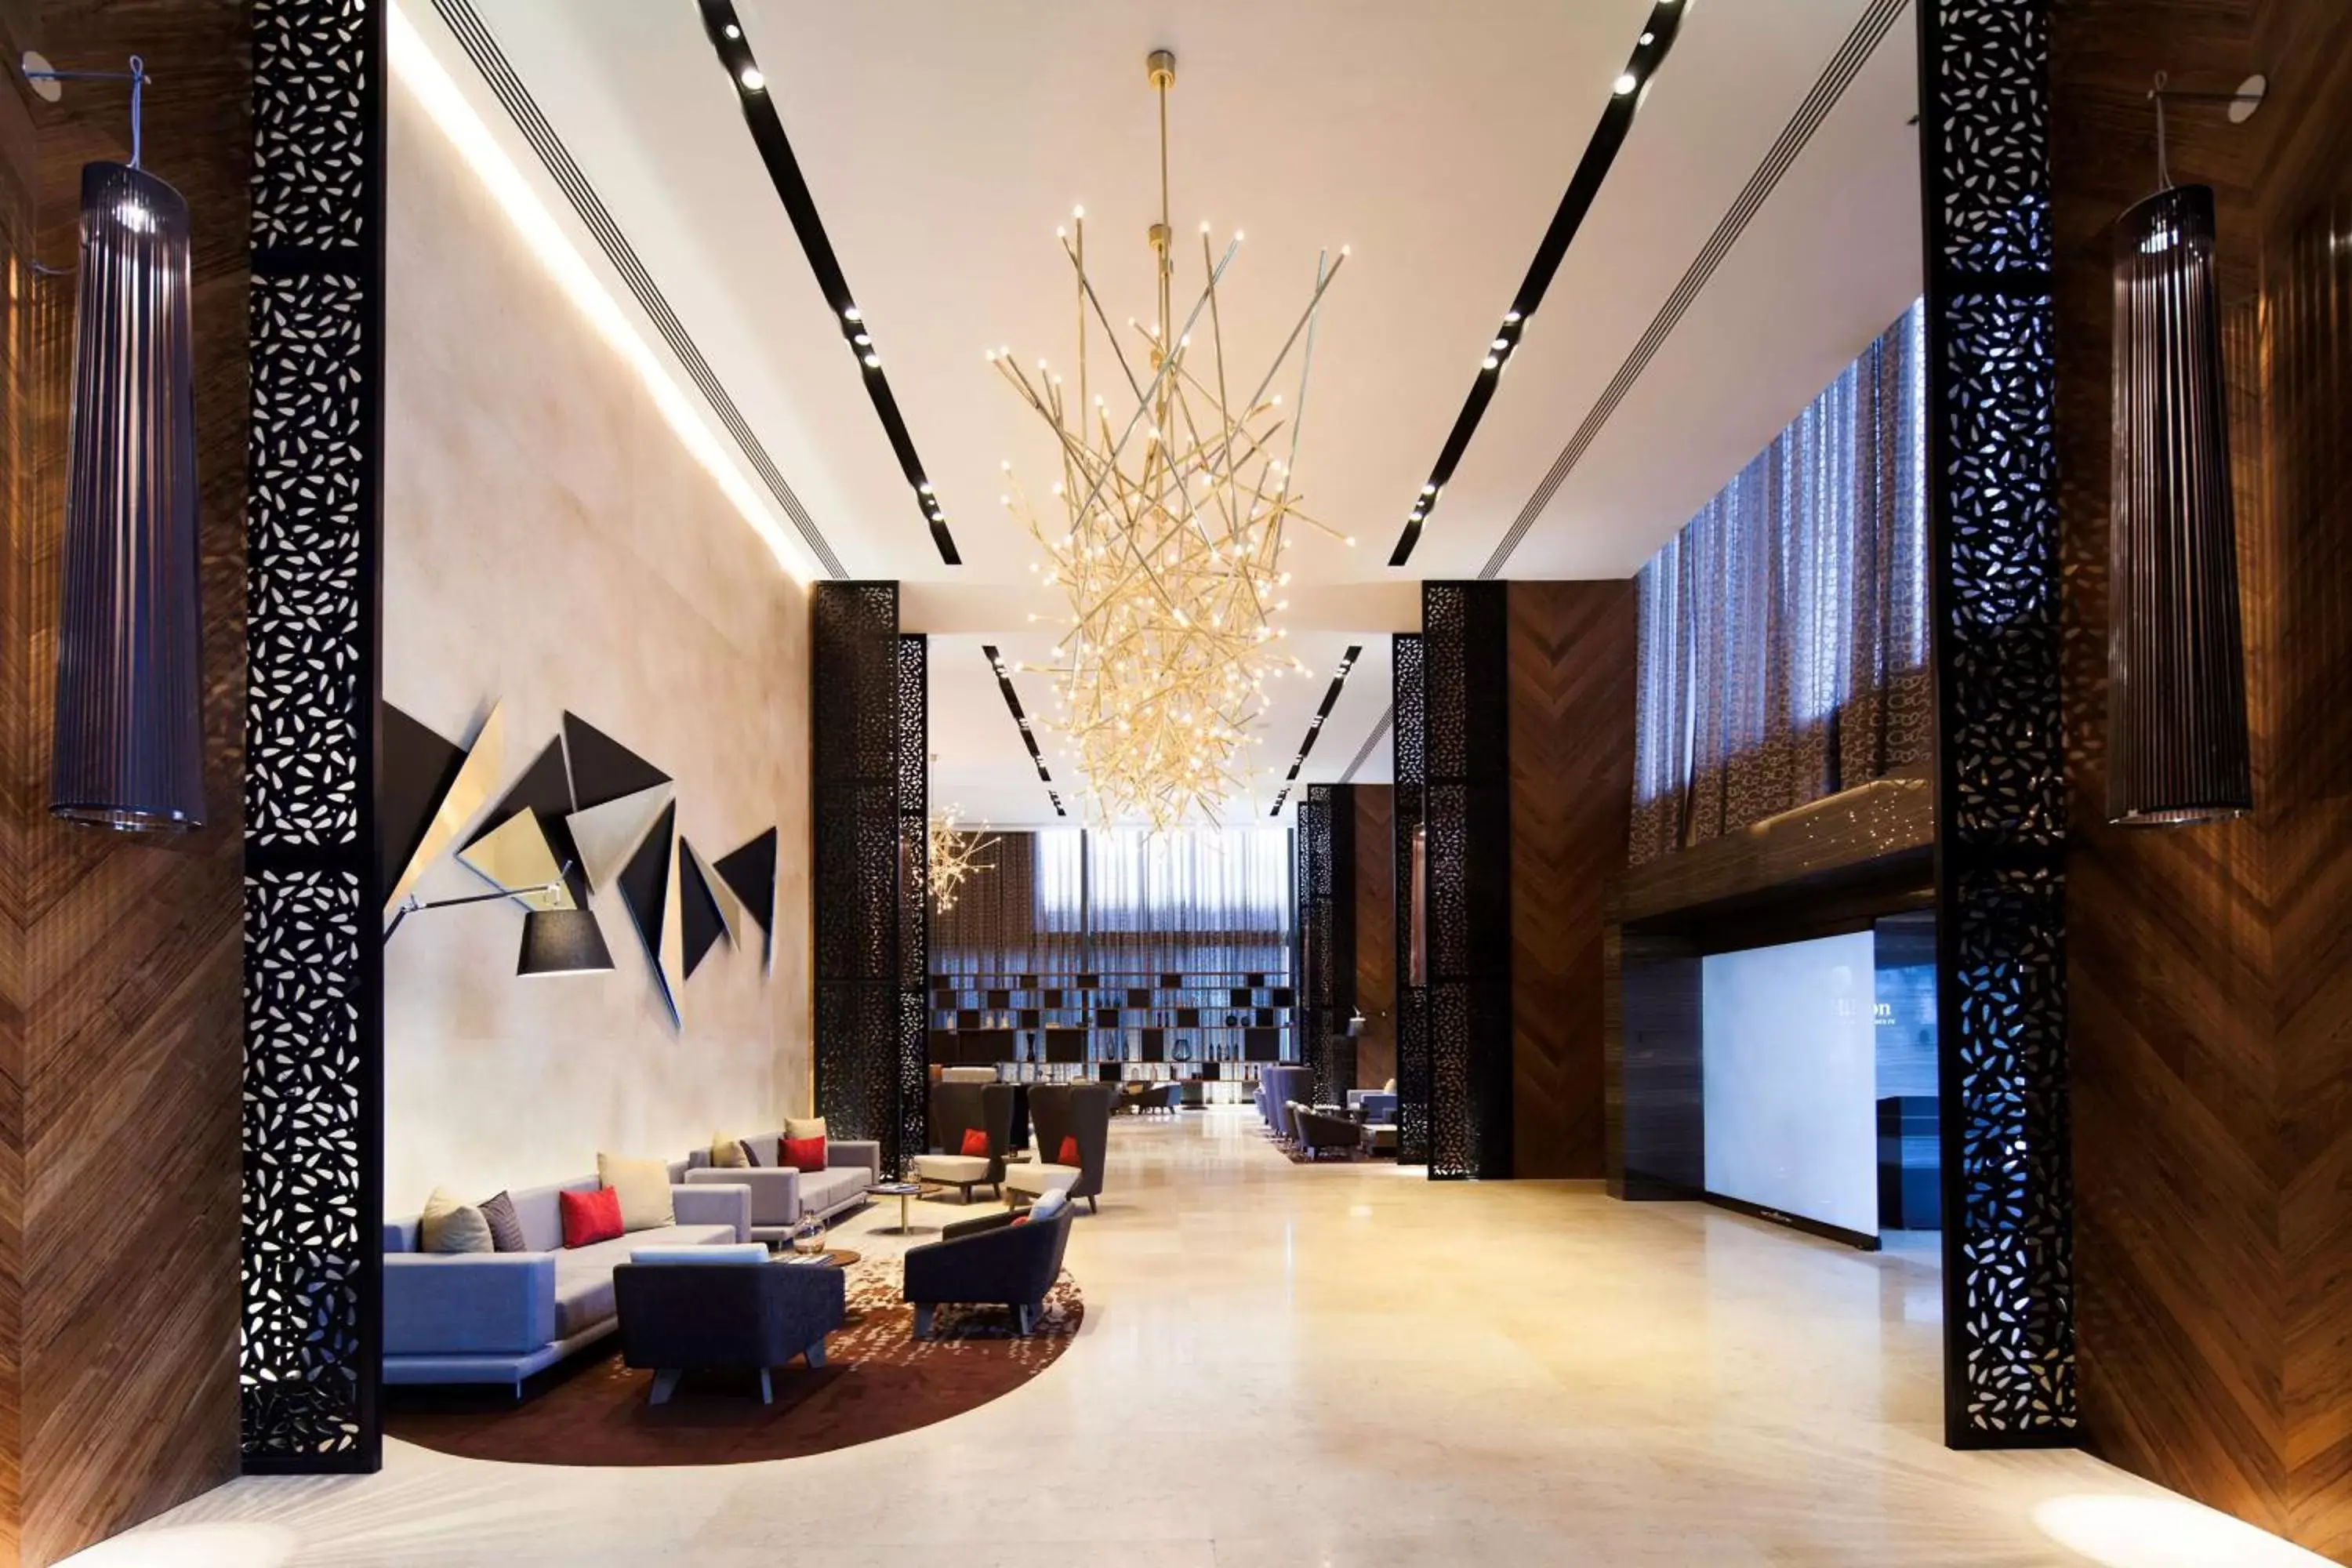 Lobby or reception, Lobby/Reception in Hilton Mexico City Santa Fe